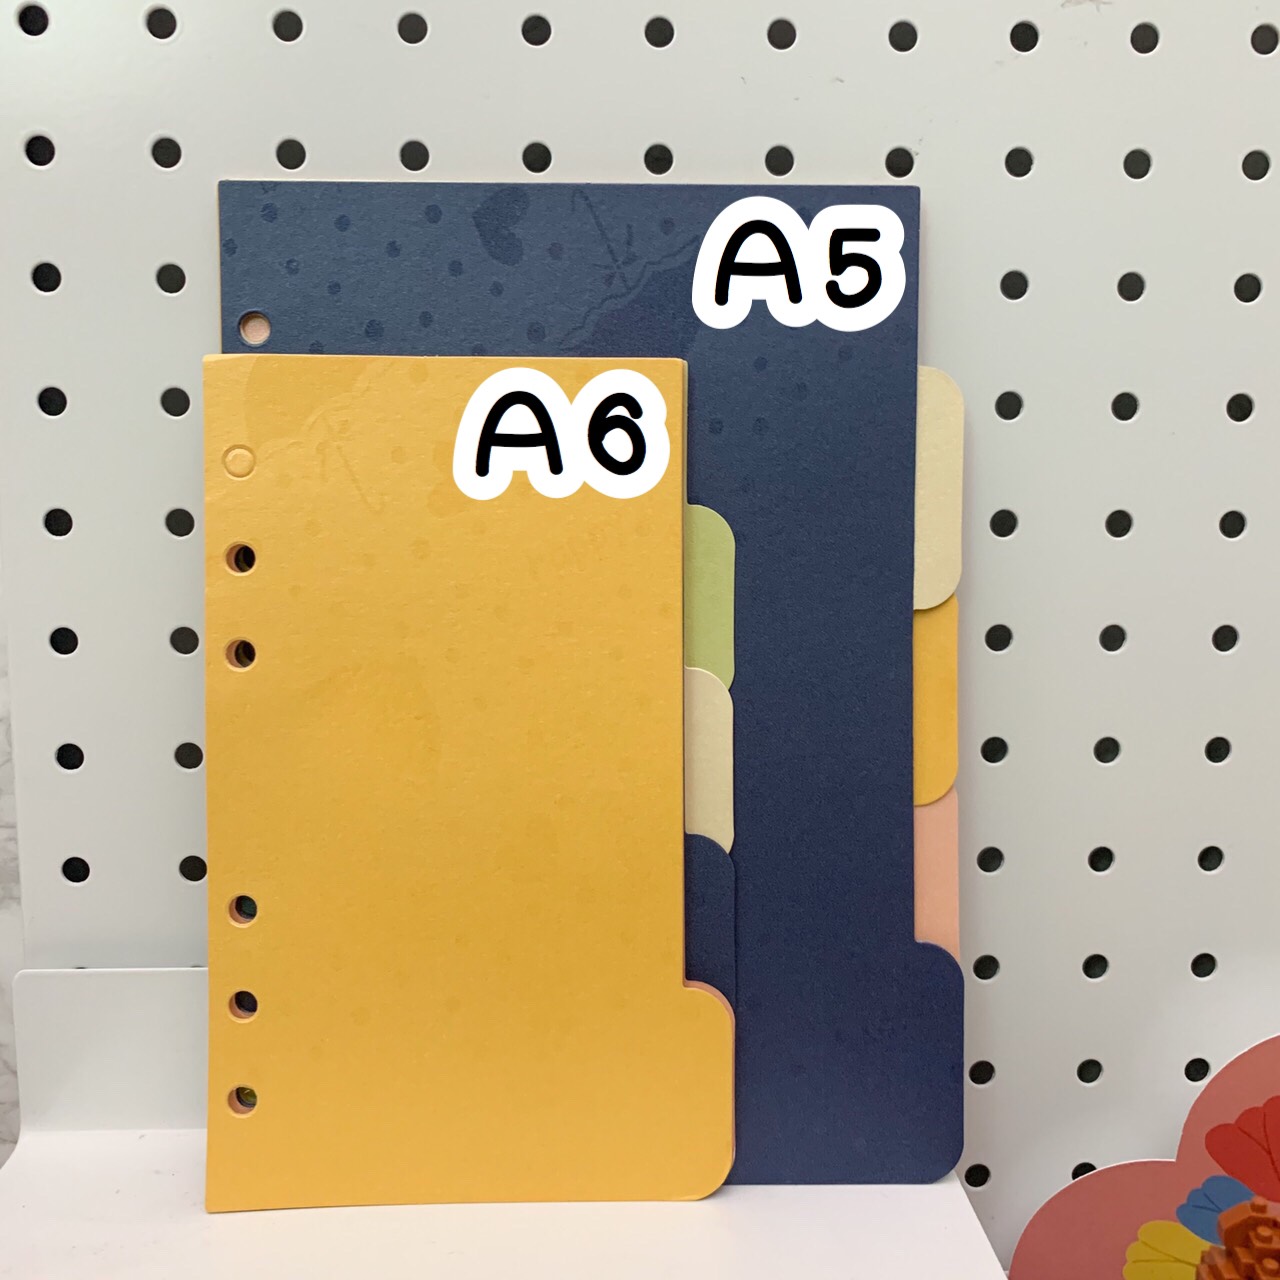 ที่คั่นแพลนเนอร์ คั่นสมุดแพลนเนอร์  5 สี  แบ่งแพลนเนอร์ 5 หัวข้อ  ขนาดที่จำหน่าย A5 A6